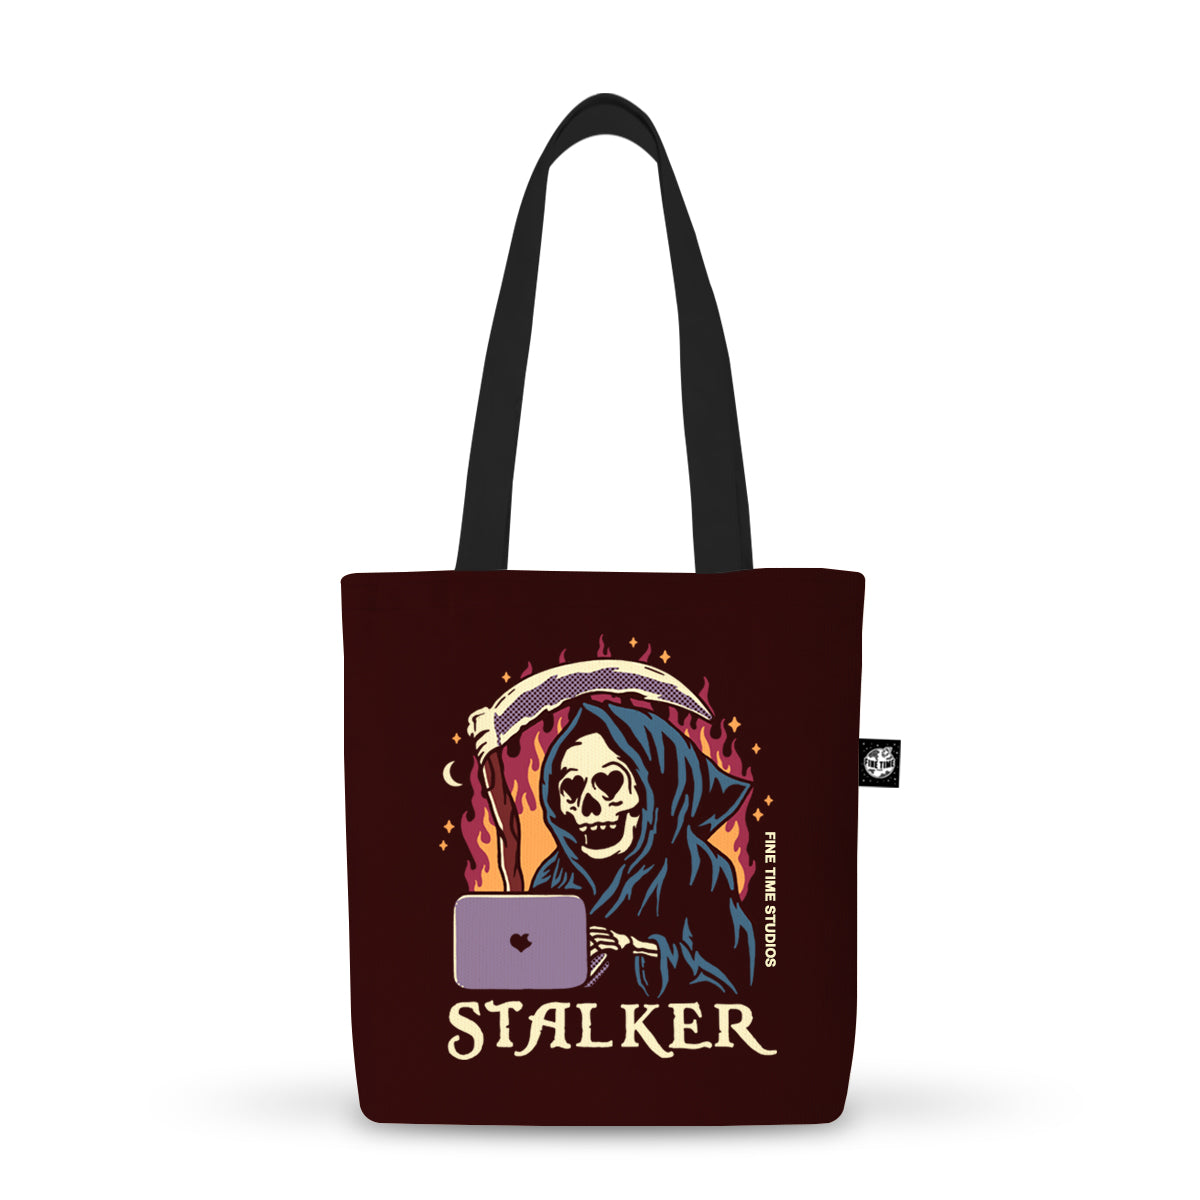 Stalker Tote Bag